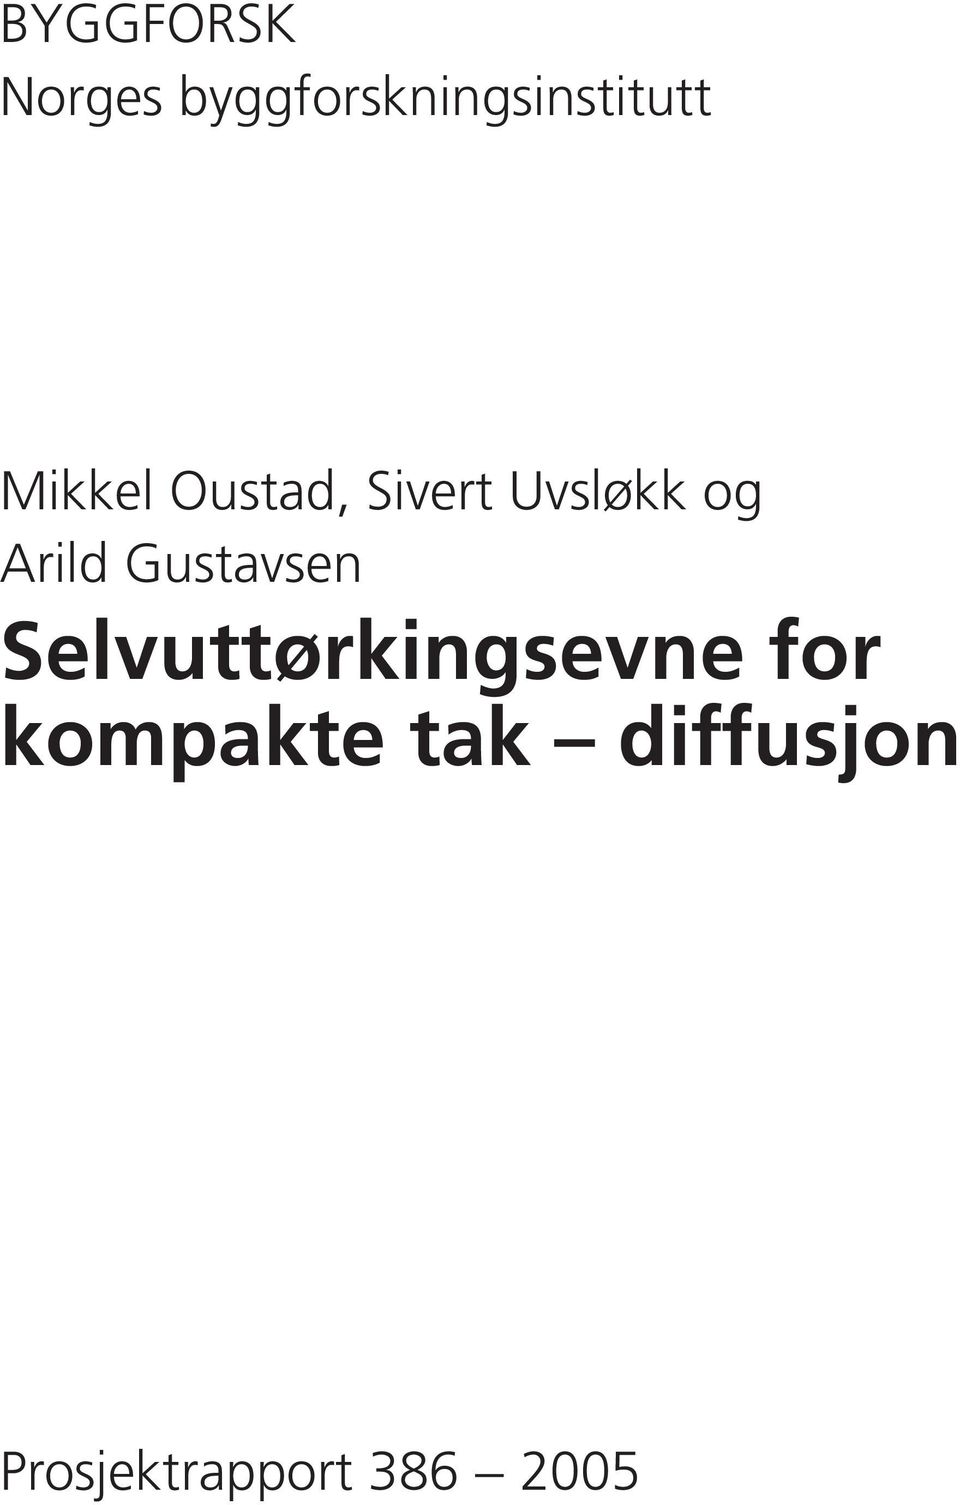 Sivert Uvsløkk og Arild Gustavsen